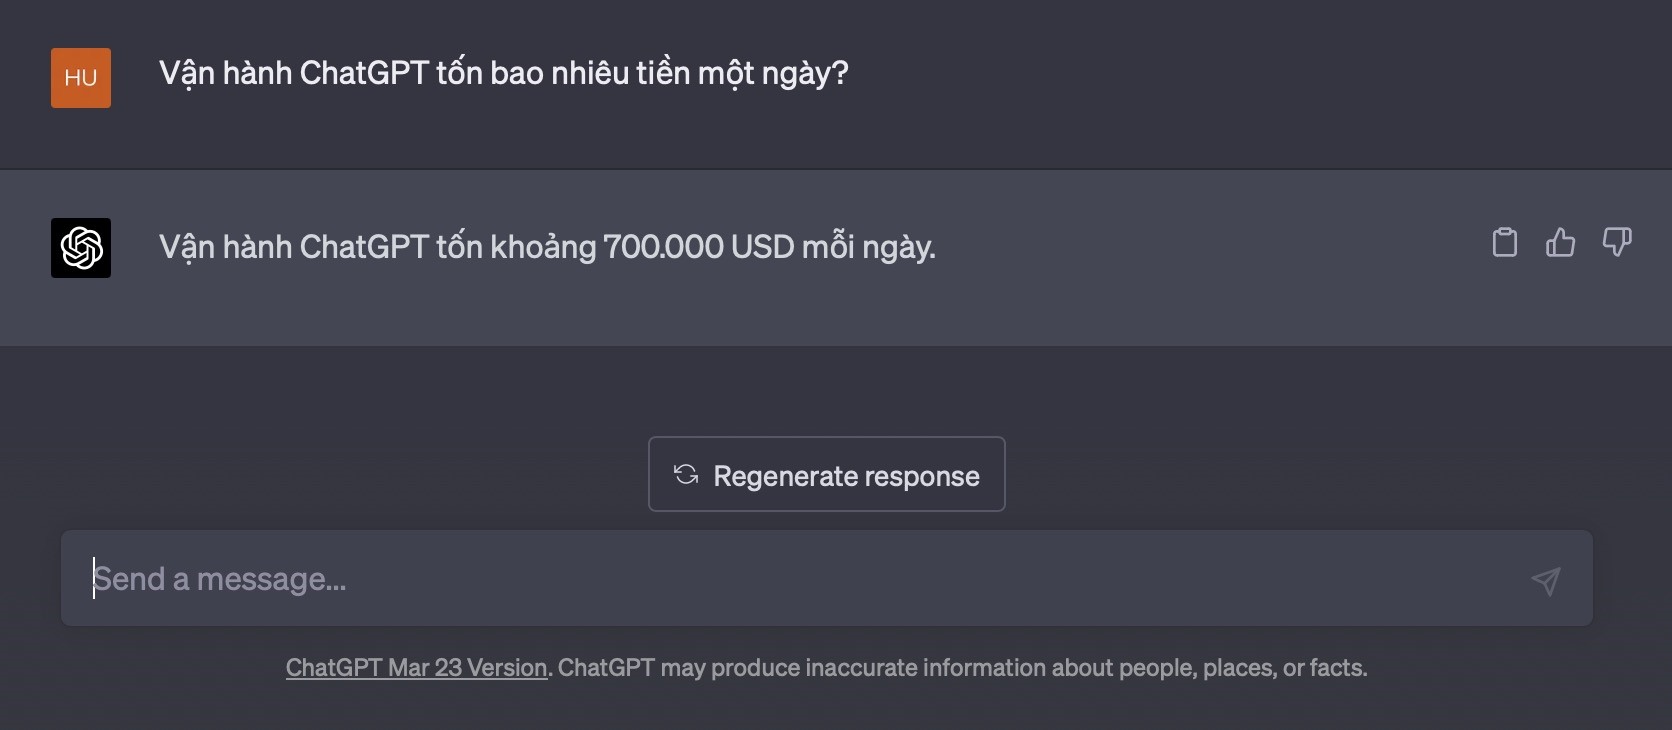 Chính ChatGPT cũng đưa ra con số 700.000 USD khi được hỏi về số tiền để vận hành nó trong một ngày. Ảnh: Anh Vũ